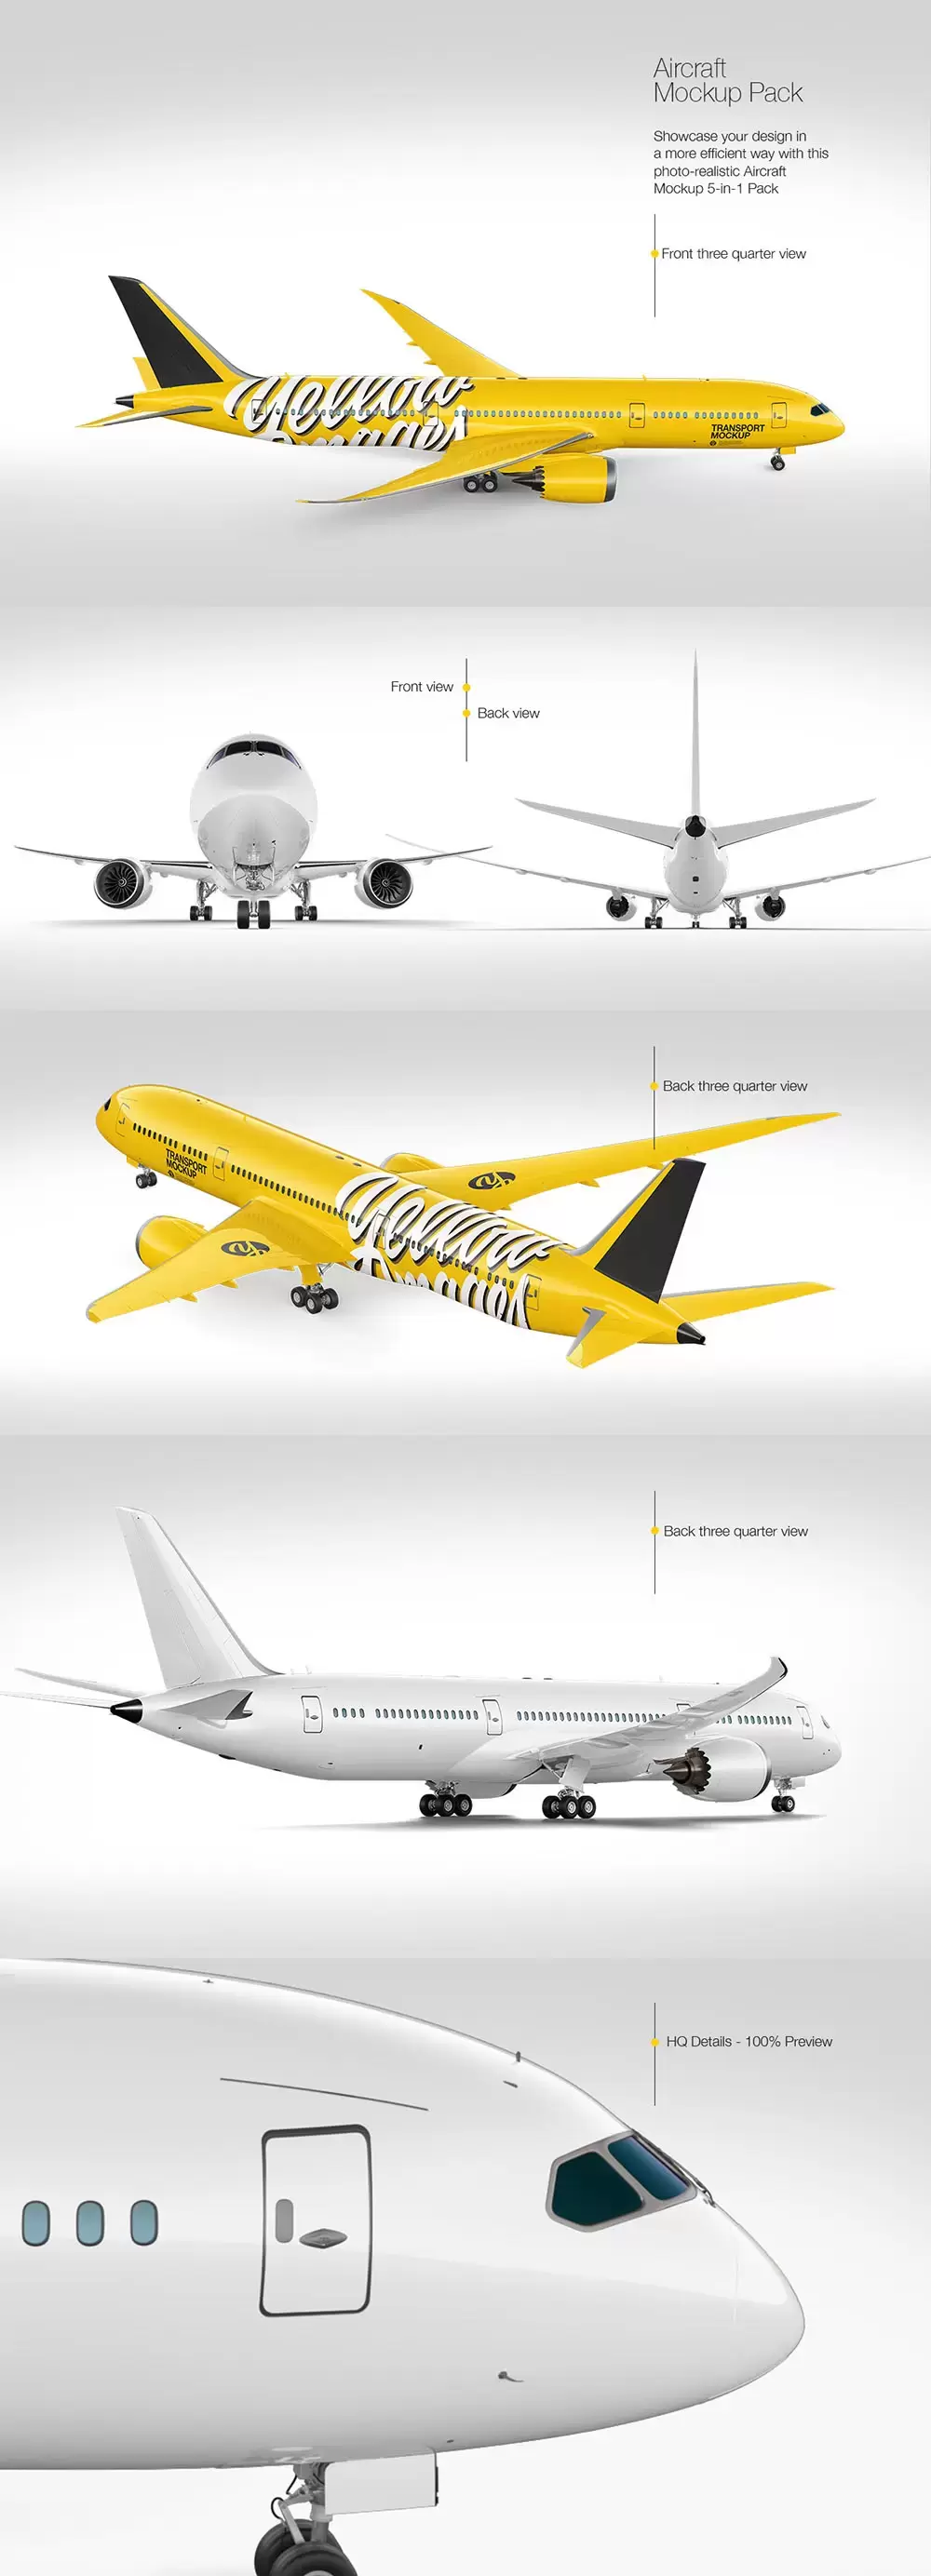 航空飞机外观广告设计样机模板 (tif)免费下载插图